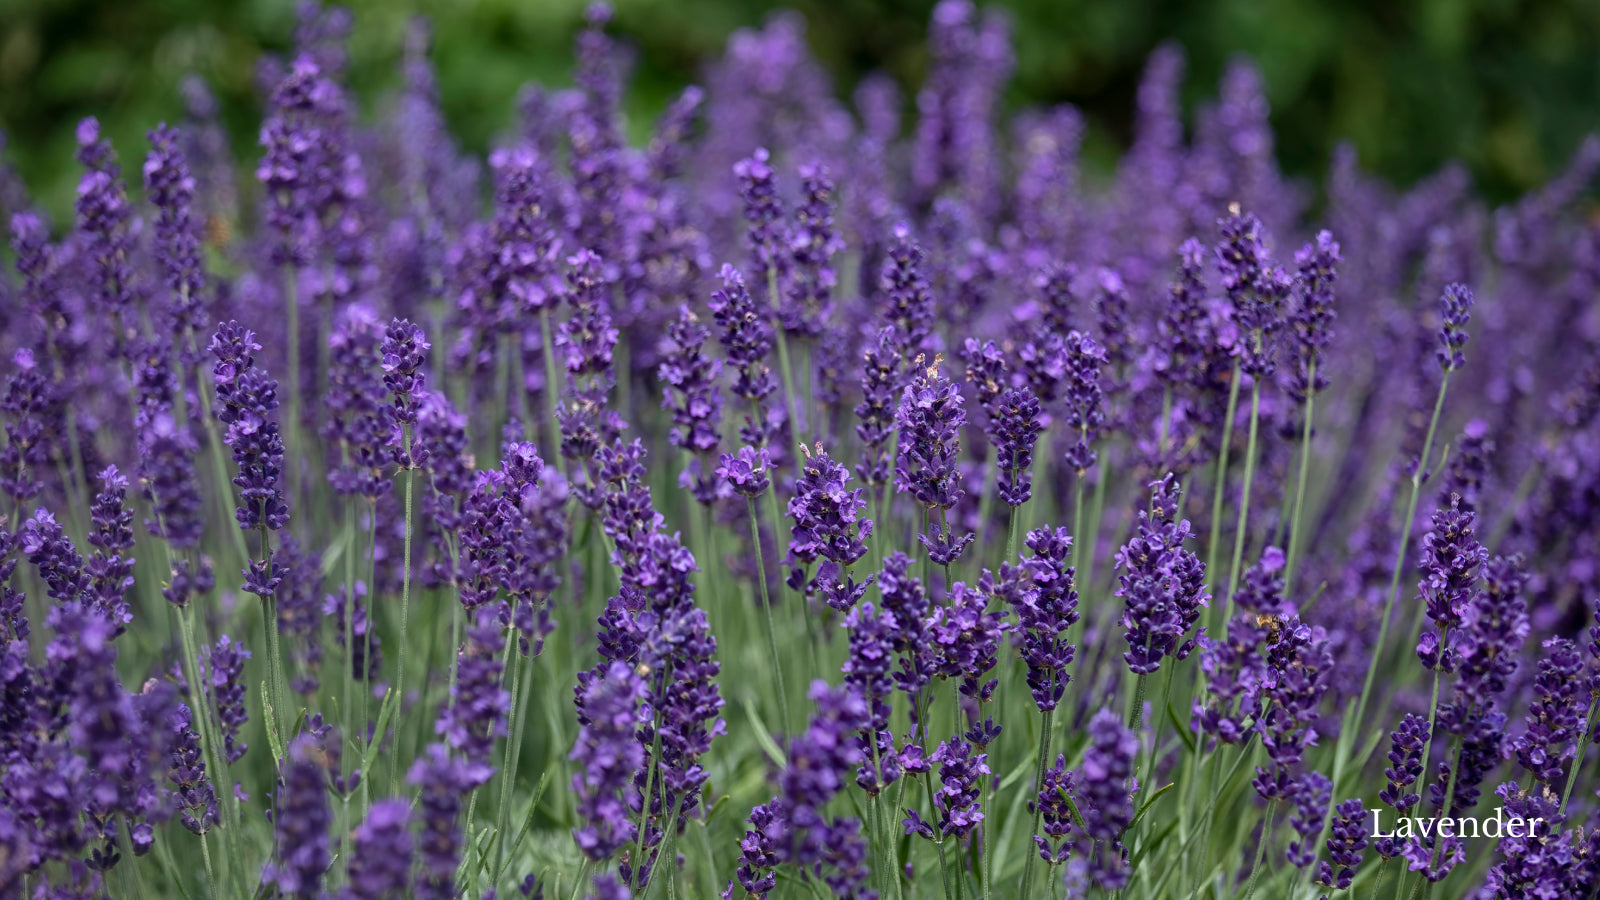 Purple lavender growing in a field